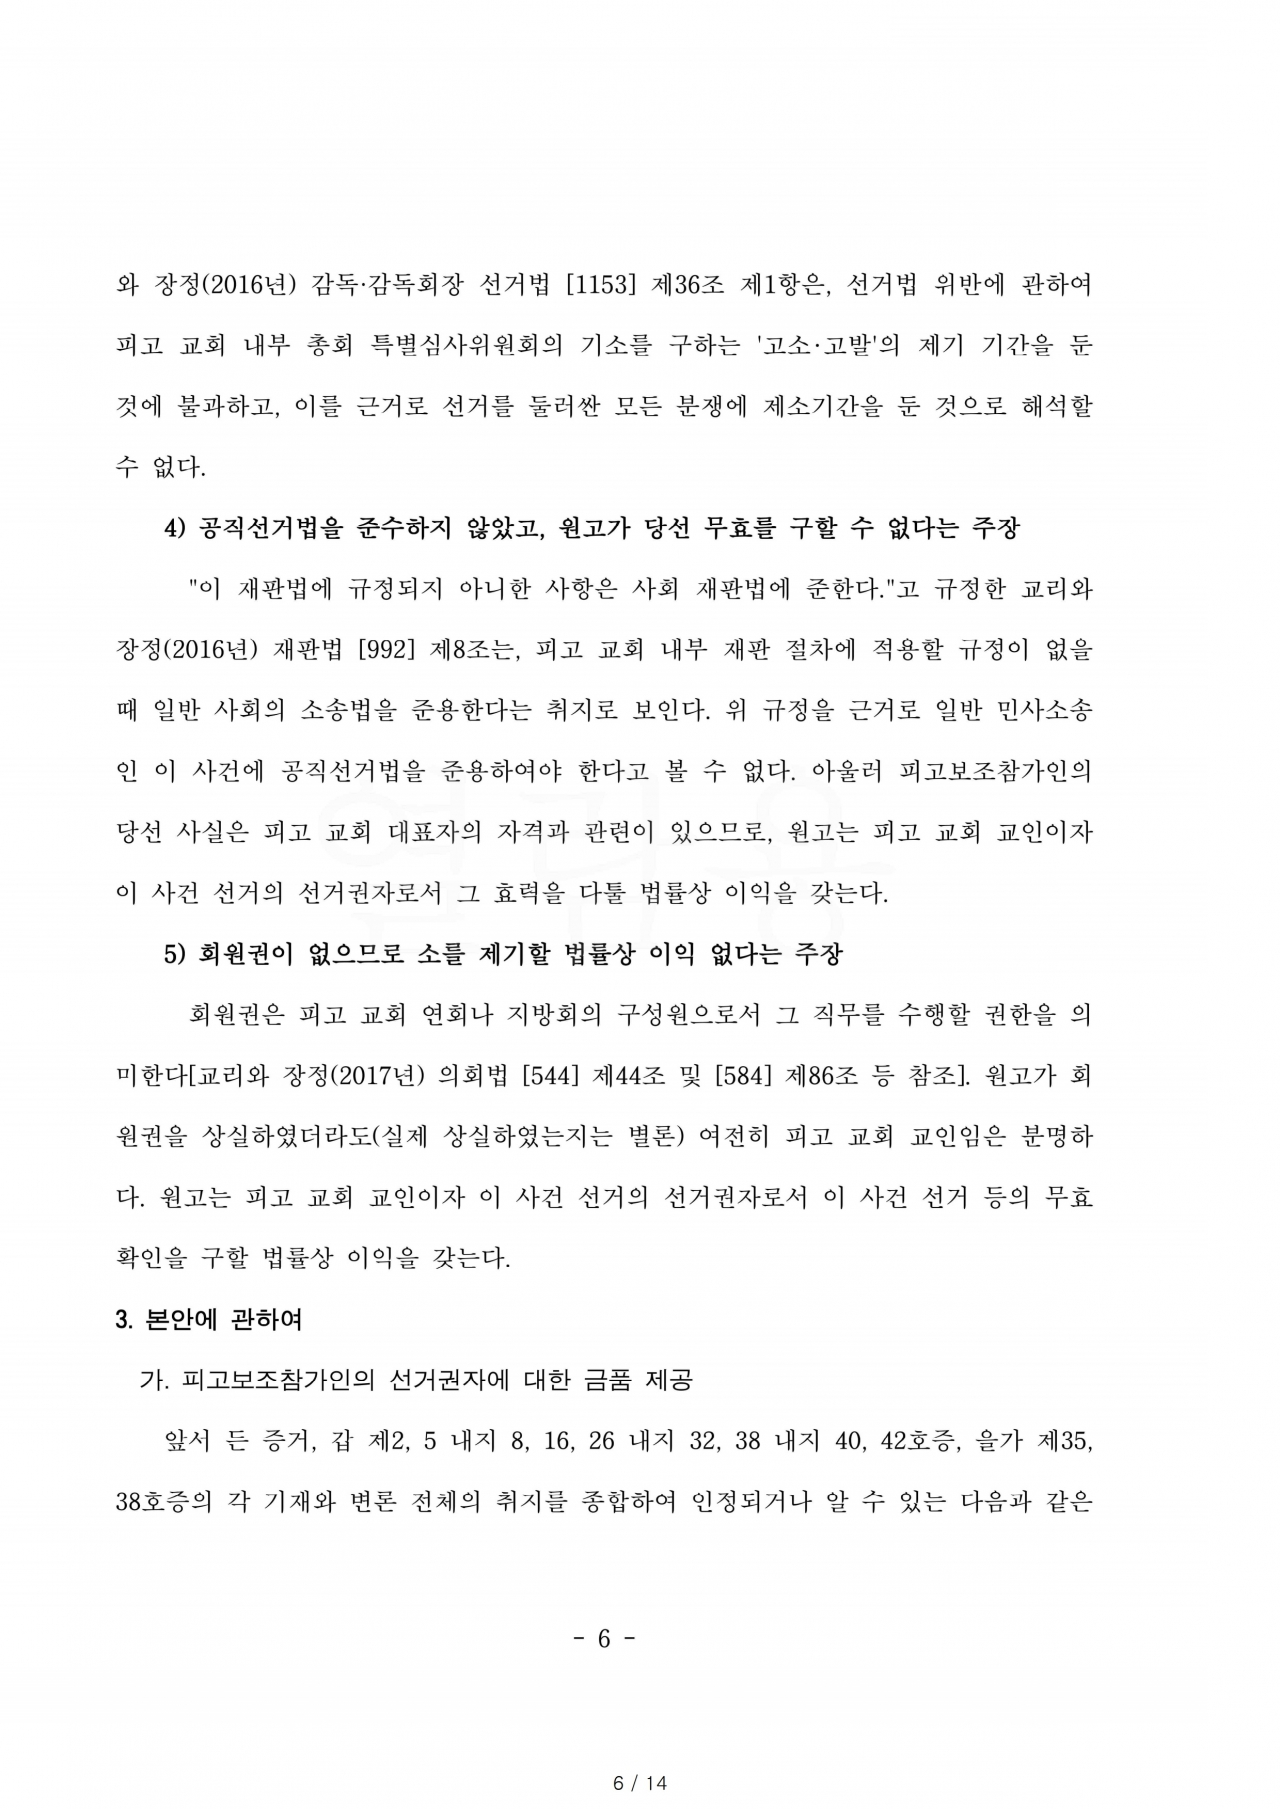 선거무효소송 본안 서울중앙지방법원 가합 538317 원고 이해연, 피고보조참가 전명구 판결문